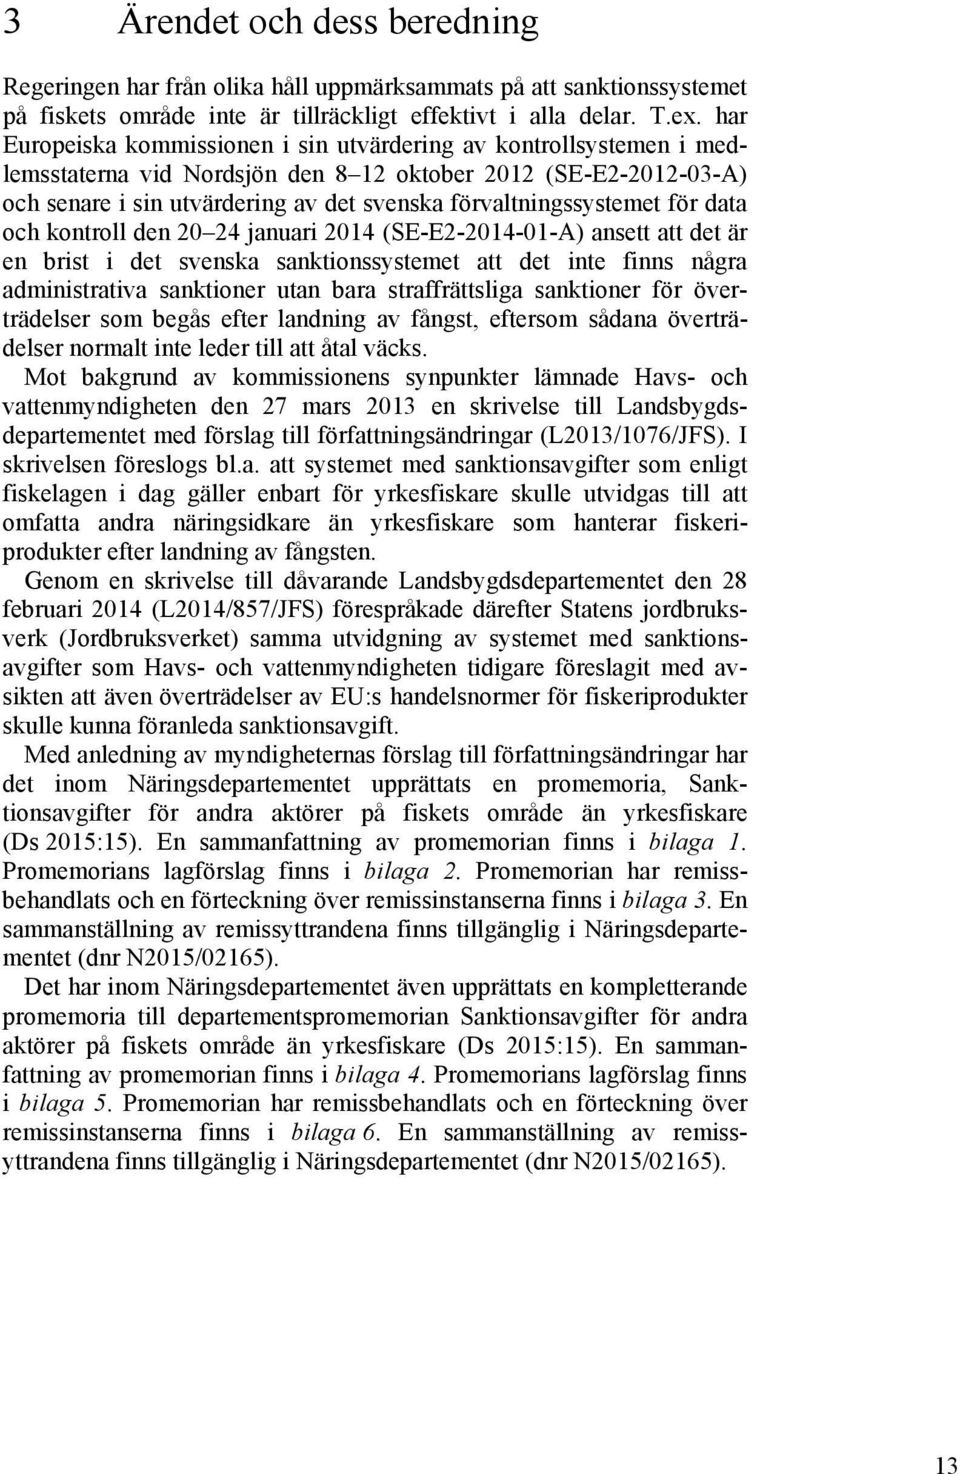 förvaltningssystemet för data och kontroll den 20 24 januari 2014 (SE-E2-2014-01-A) ansett att det är en brist i det svenska sanktionssystemet att det inte finns några administrativa sanktioner utan